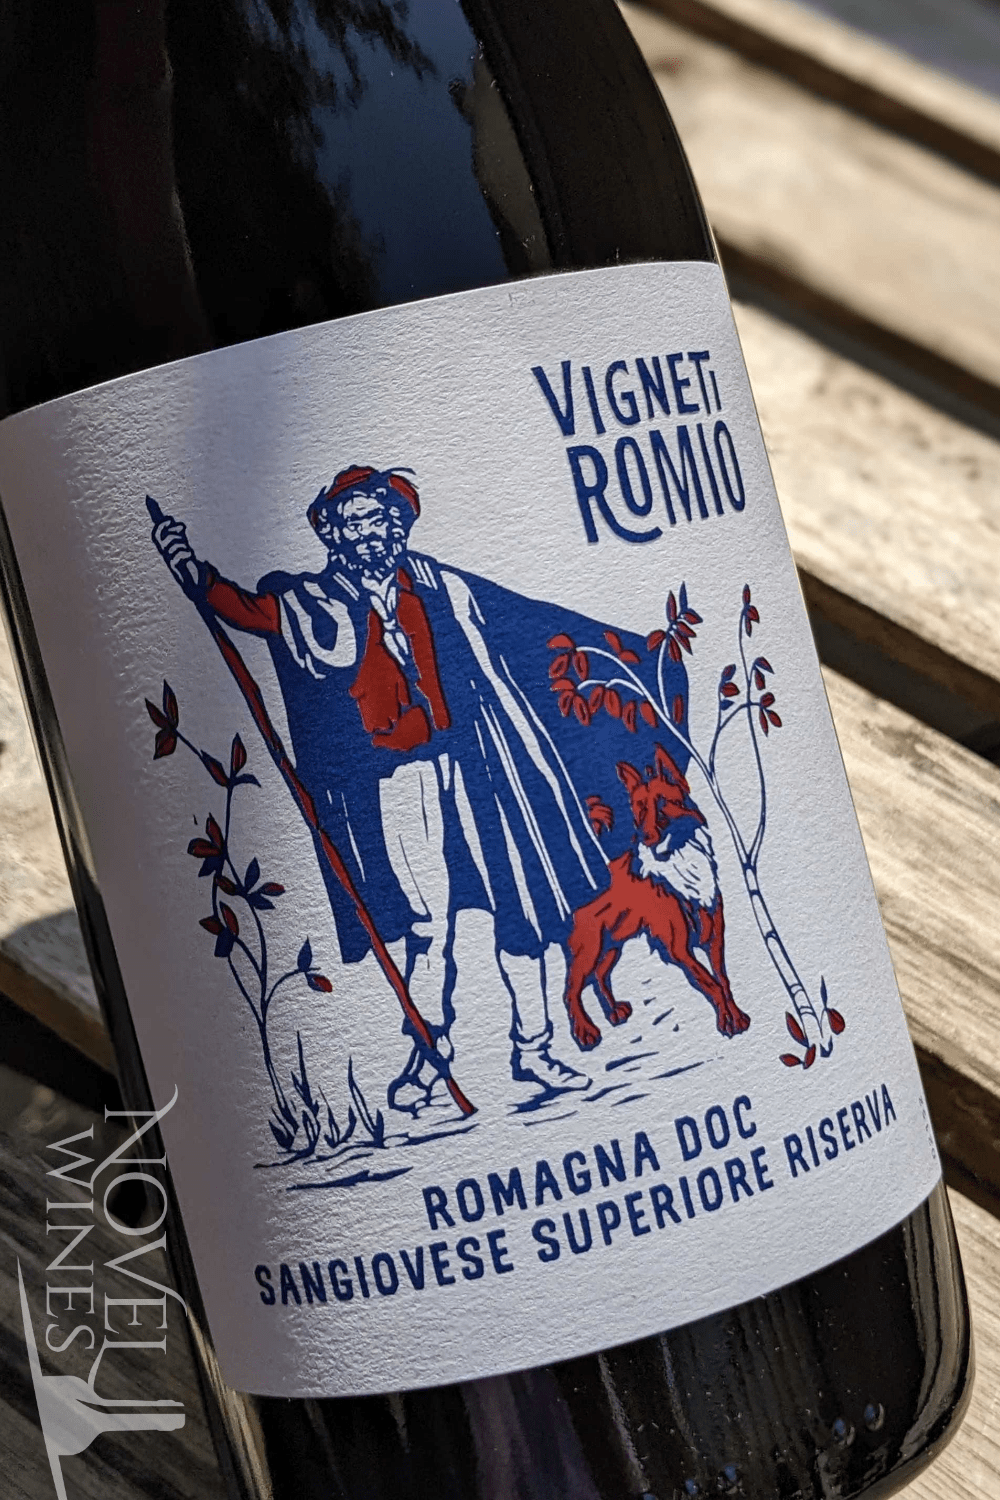 Novel Wines Vigneti Romio Sangiovese Superiore Riserva 2019, Italy